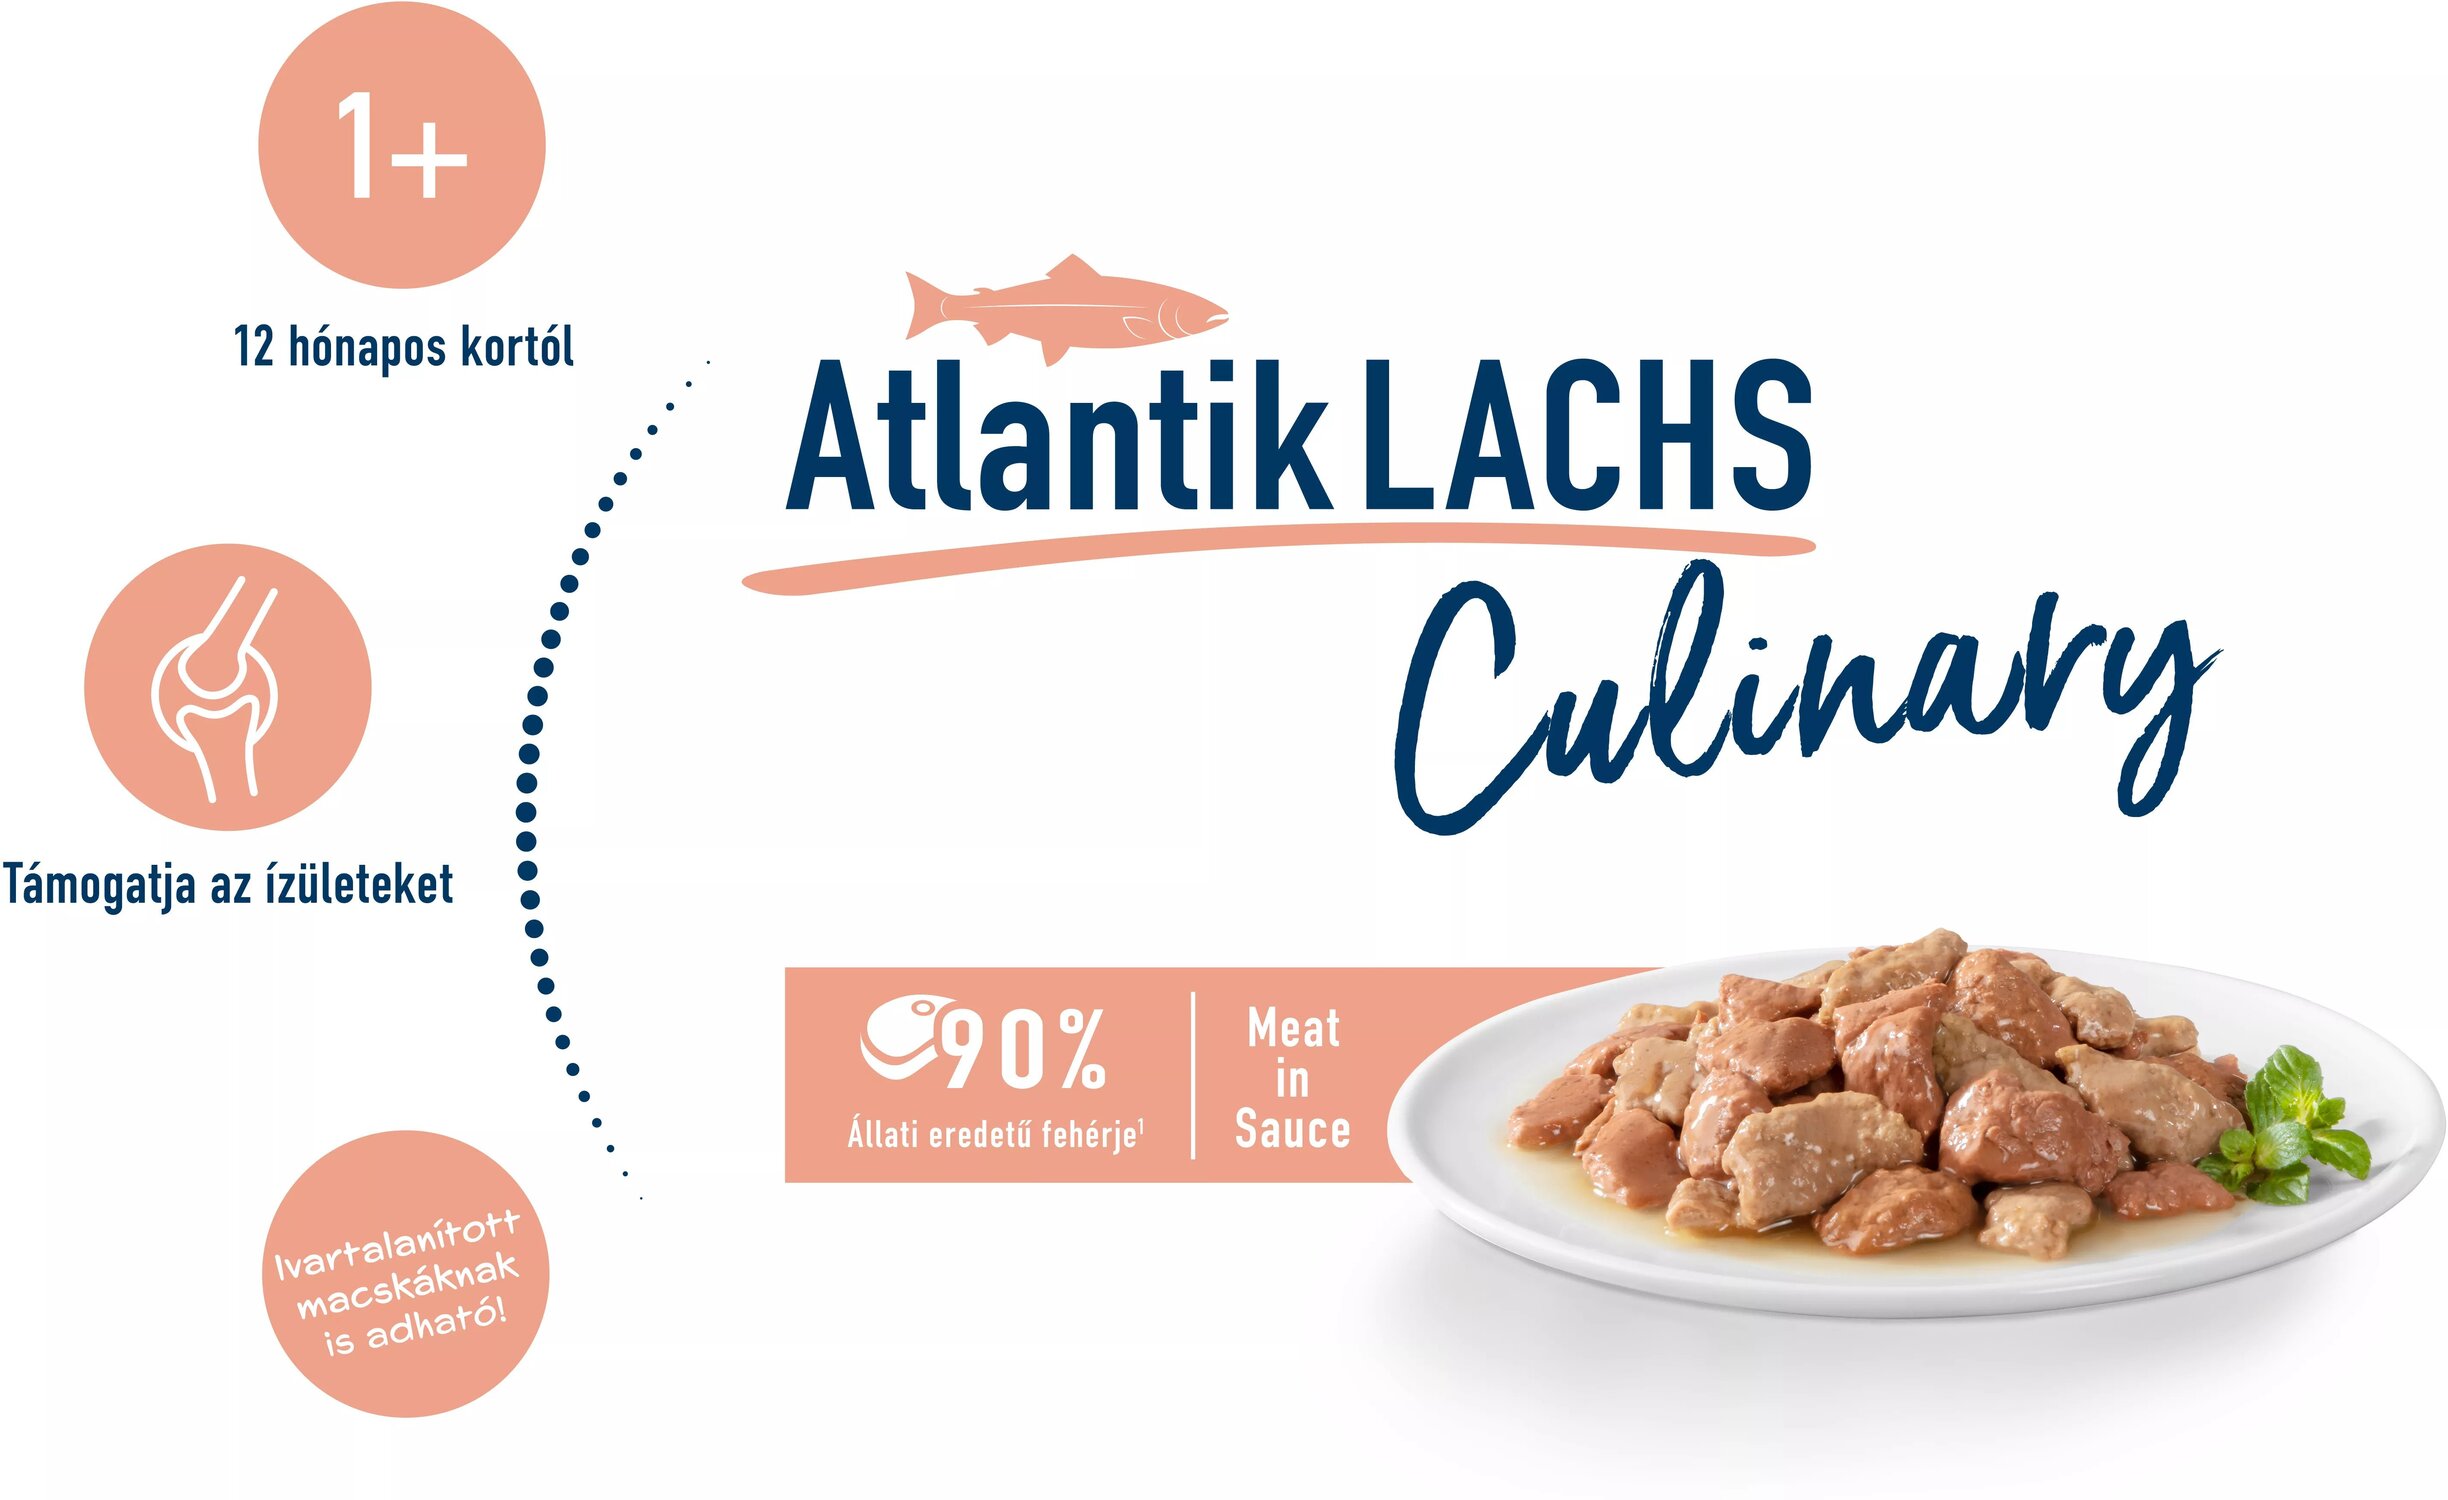 Happy Cat Meat in Sauce Atlantik-Lachs | Hrană pentru pisici cu somon delicios la pliculeț - zoom